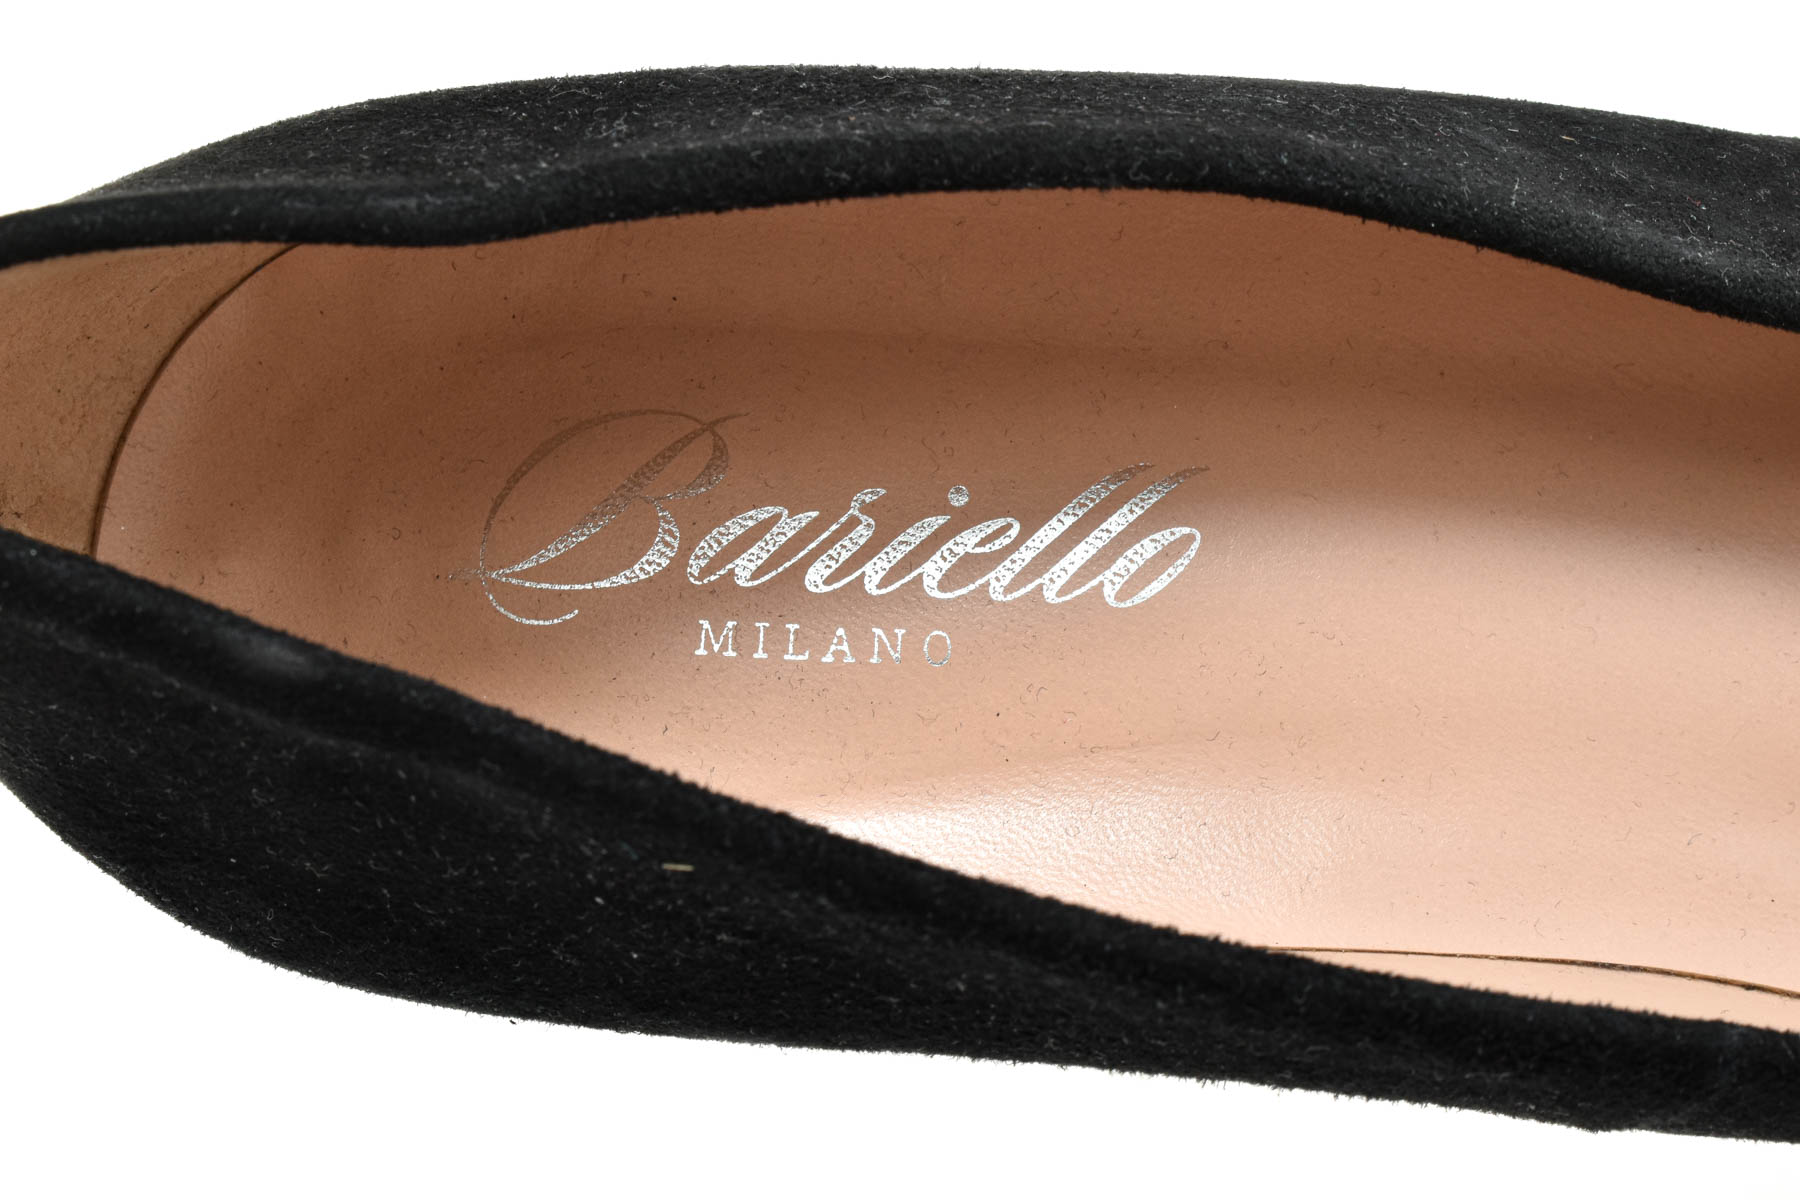 Γυναικεία παπούτσια - Bariello Milano - 4